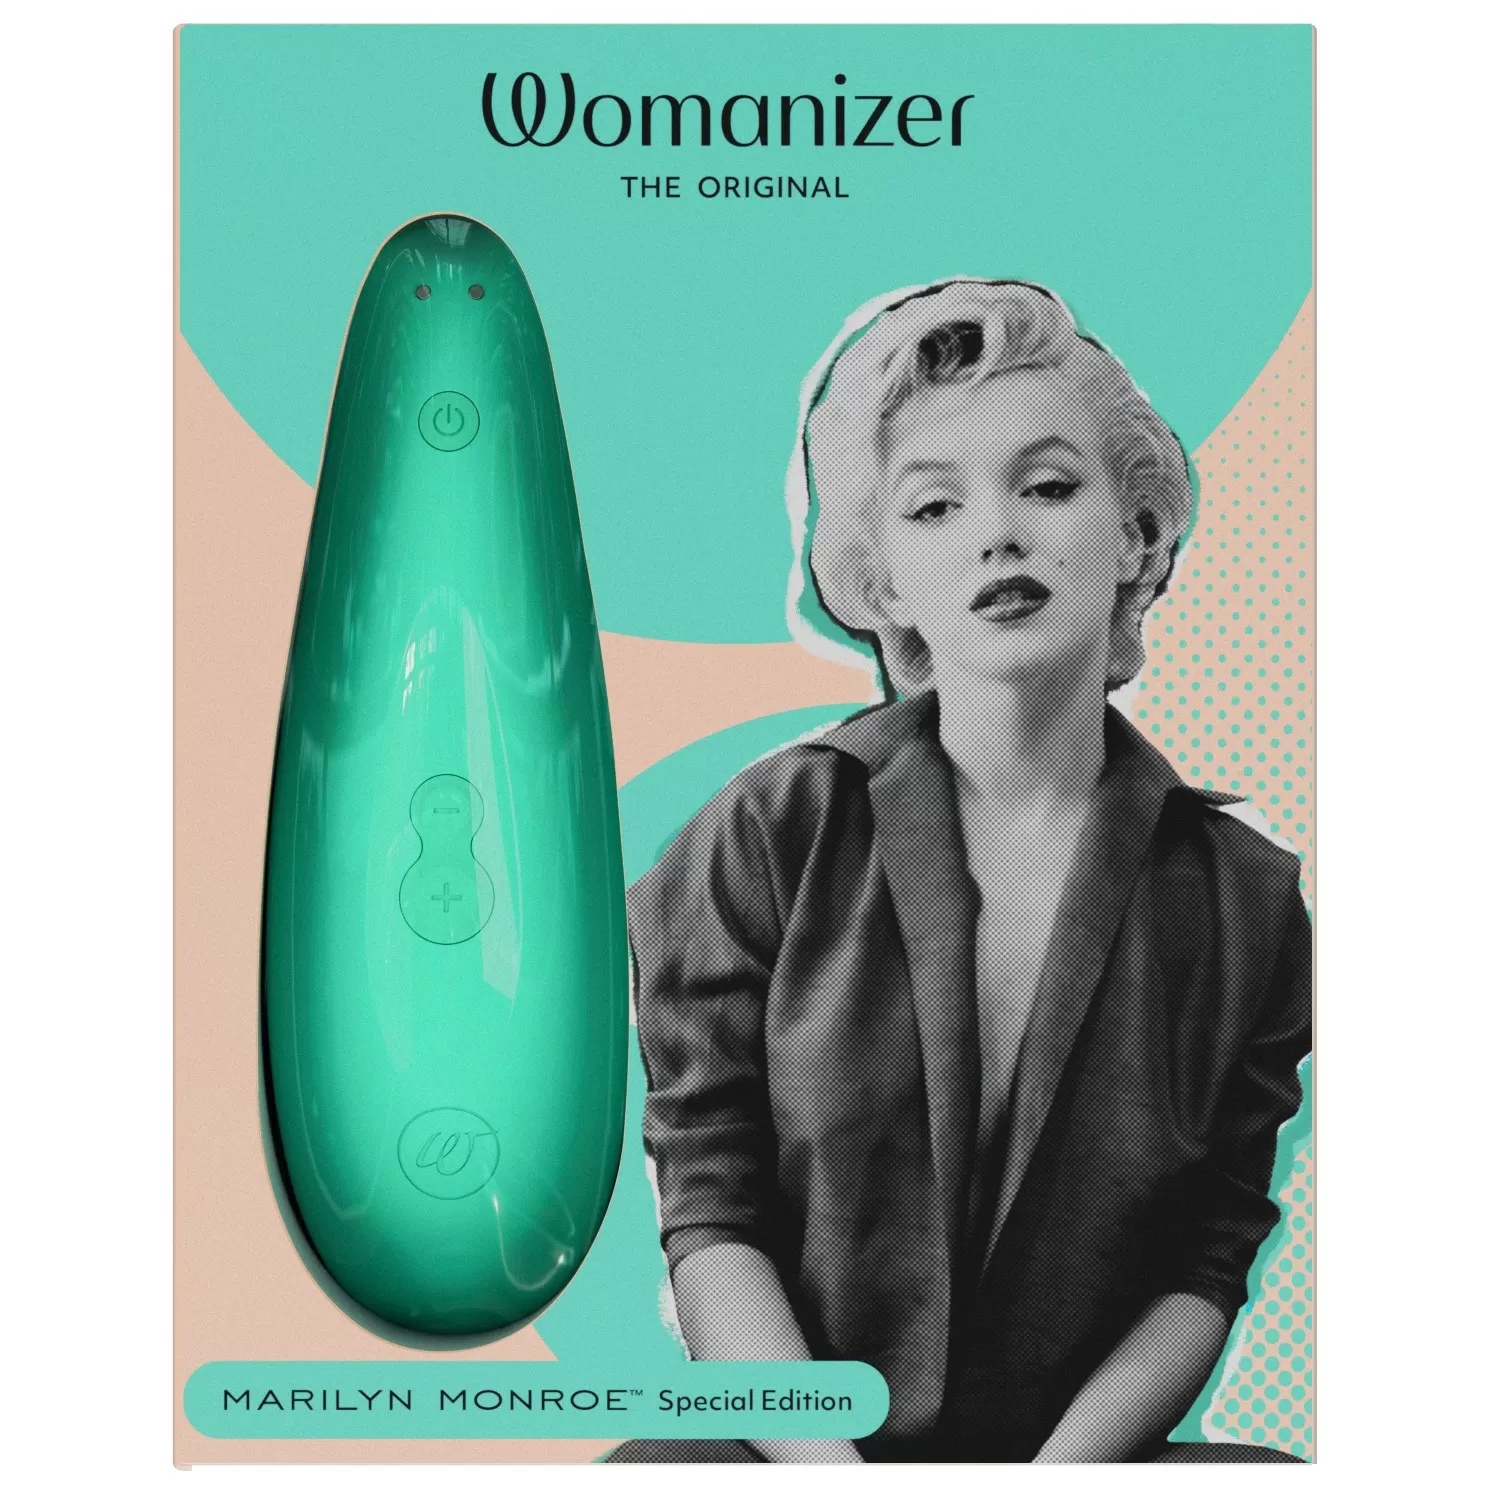    Womanizer Marilyn Monroe 